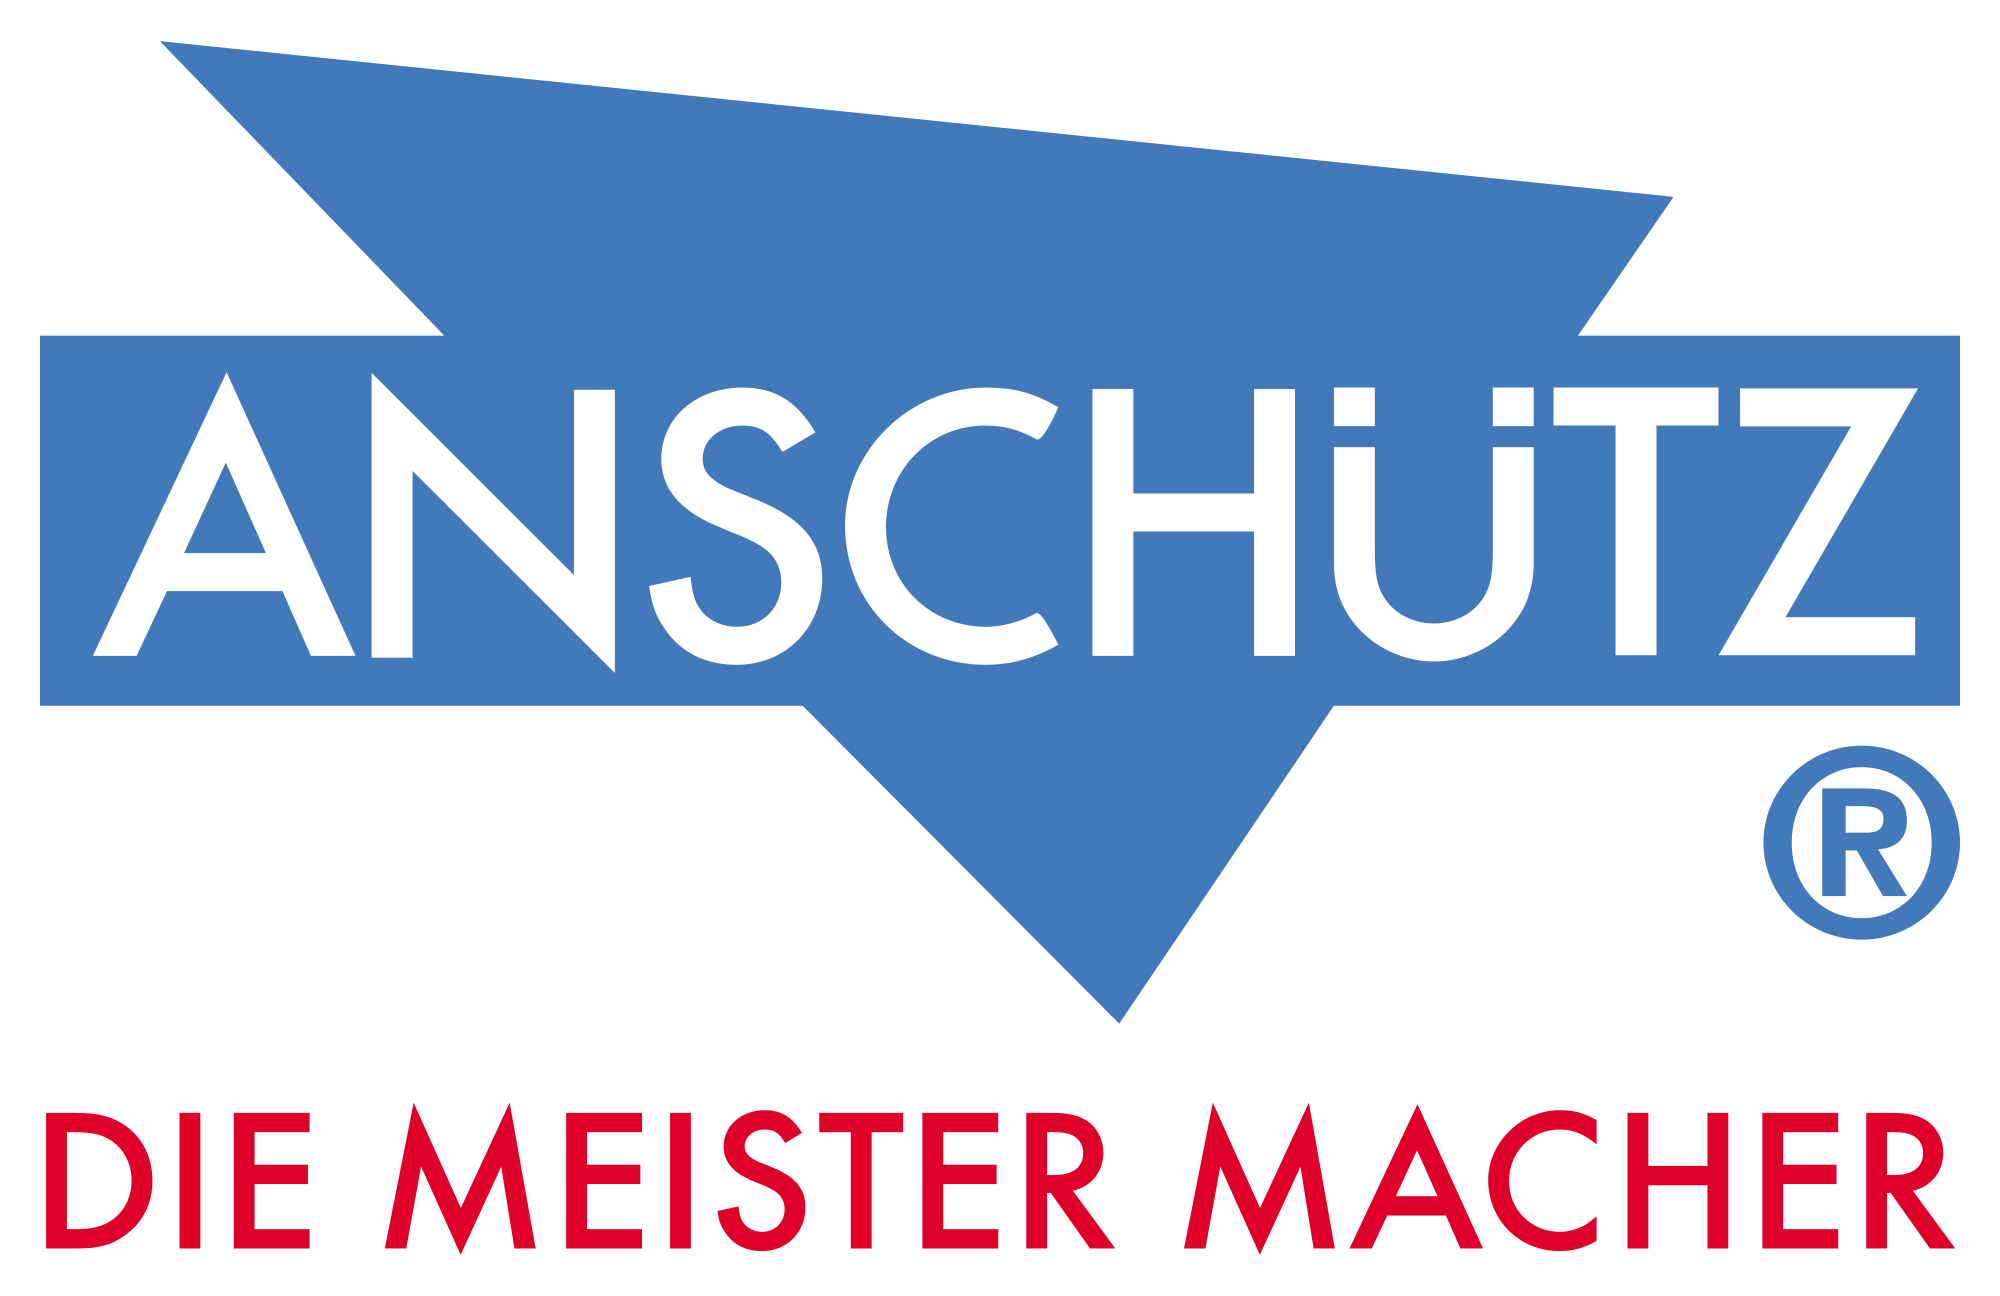 Anschutz Logo - File:Anschuetz logo.svg - Wikimedia Commons